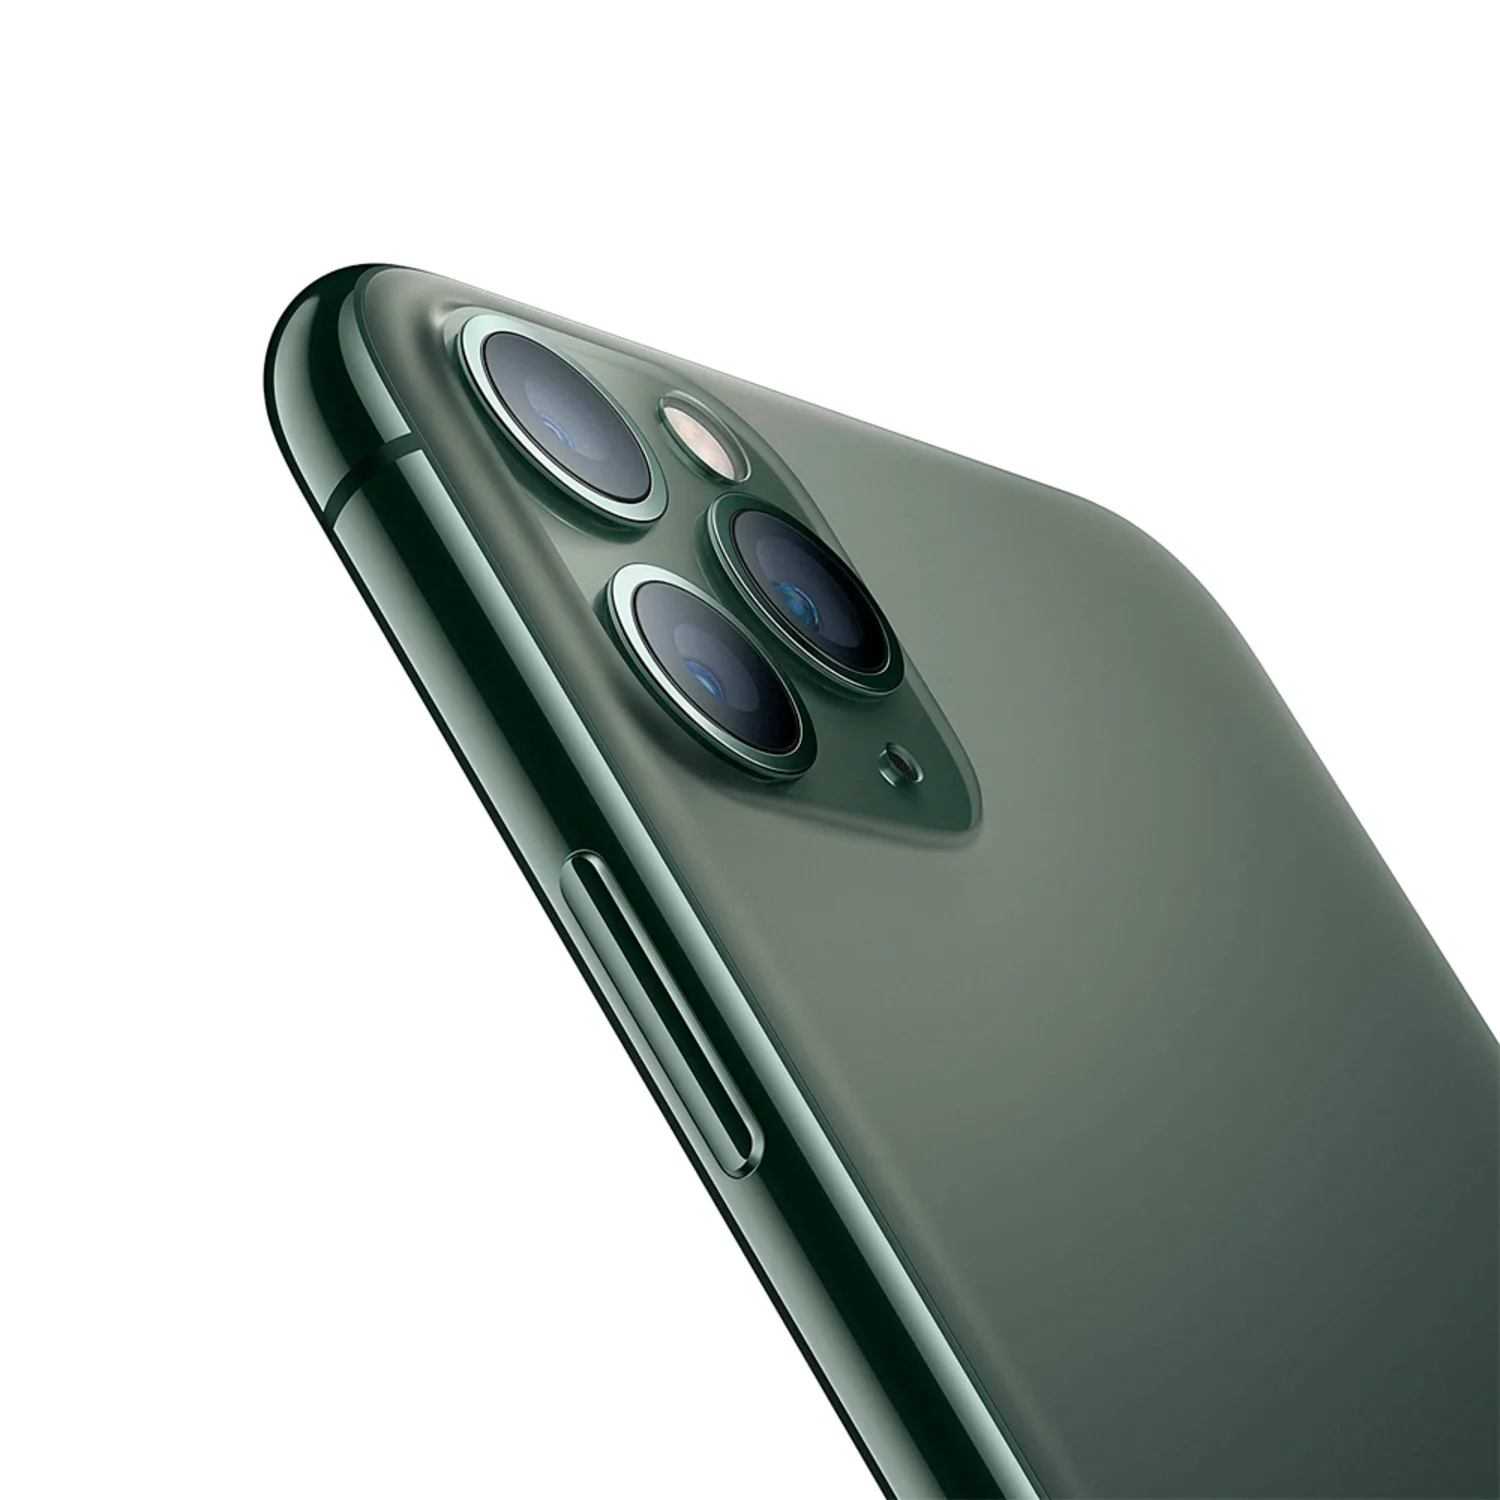 Celular Apple iPhone 11 Pro Max 256GB / 4GB RAM / 4G / Tela 6.5'' / Câmeras 12MP + 12MP + 12MP e 12MP - Verde (Só Aparelho) (SWAP A)